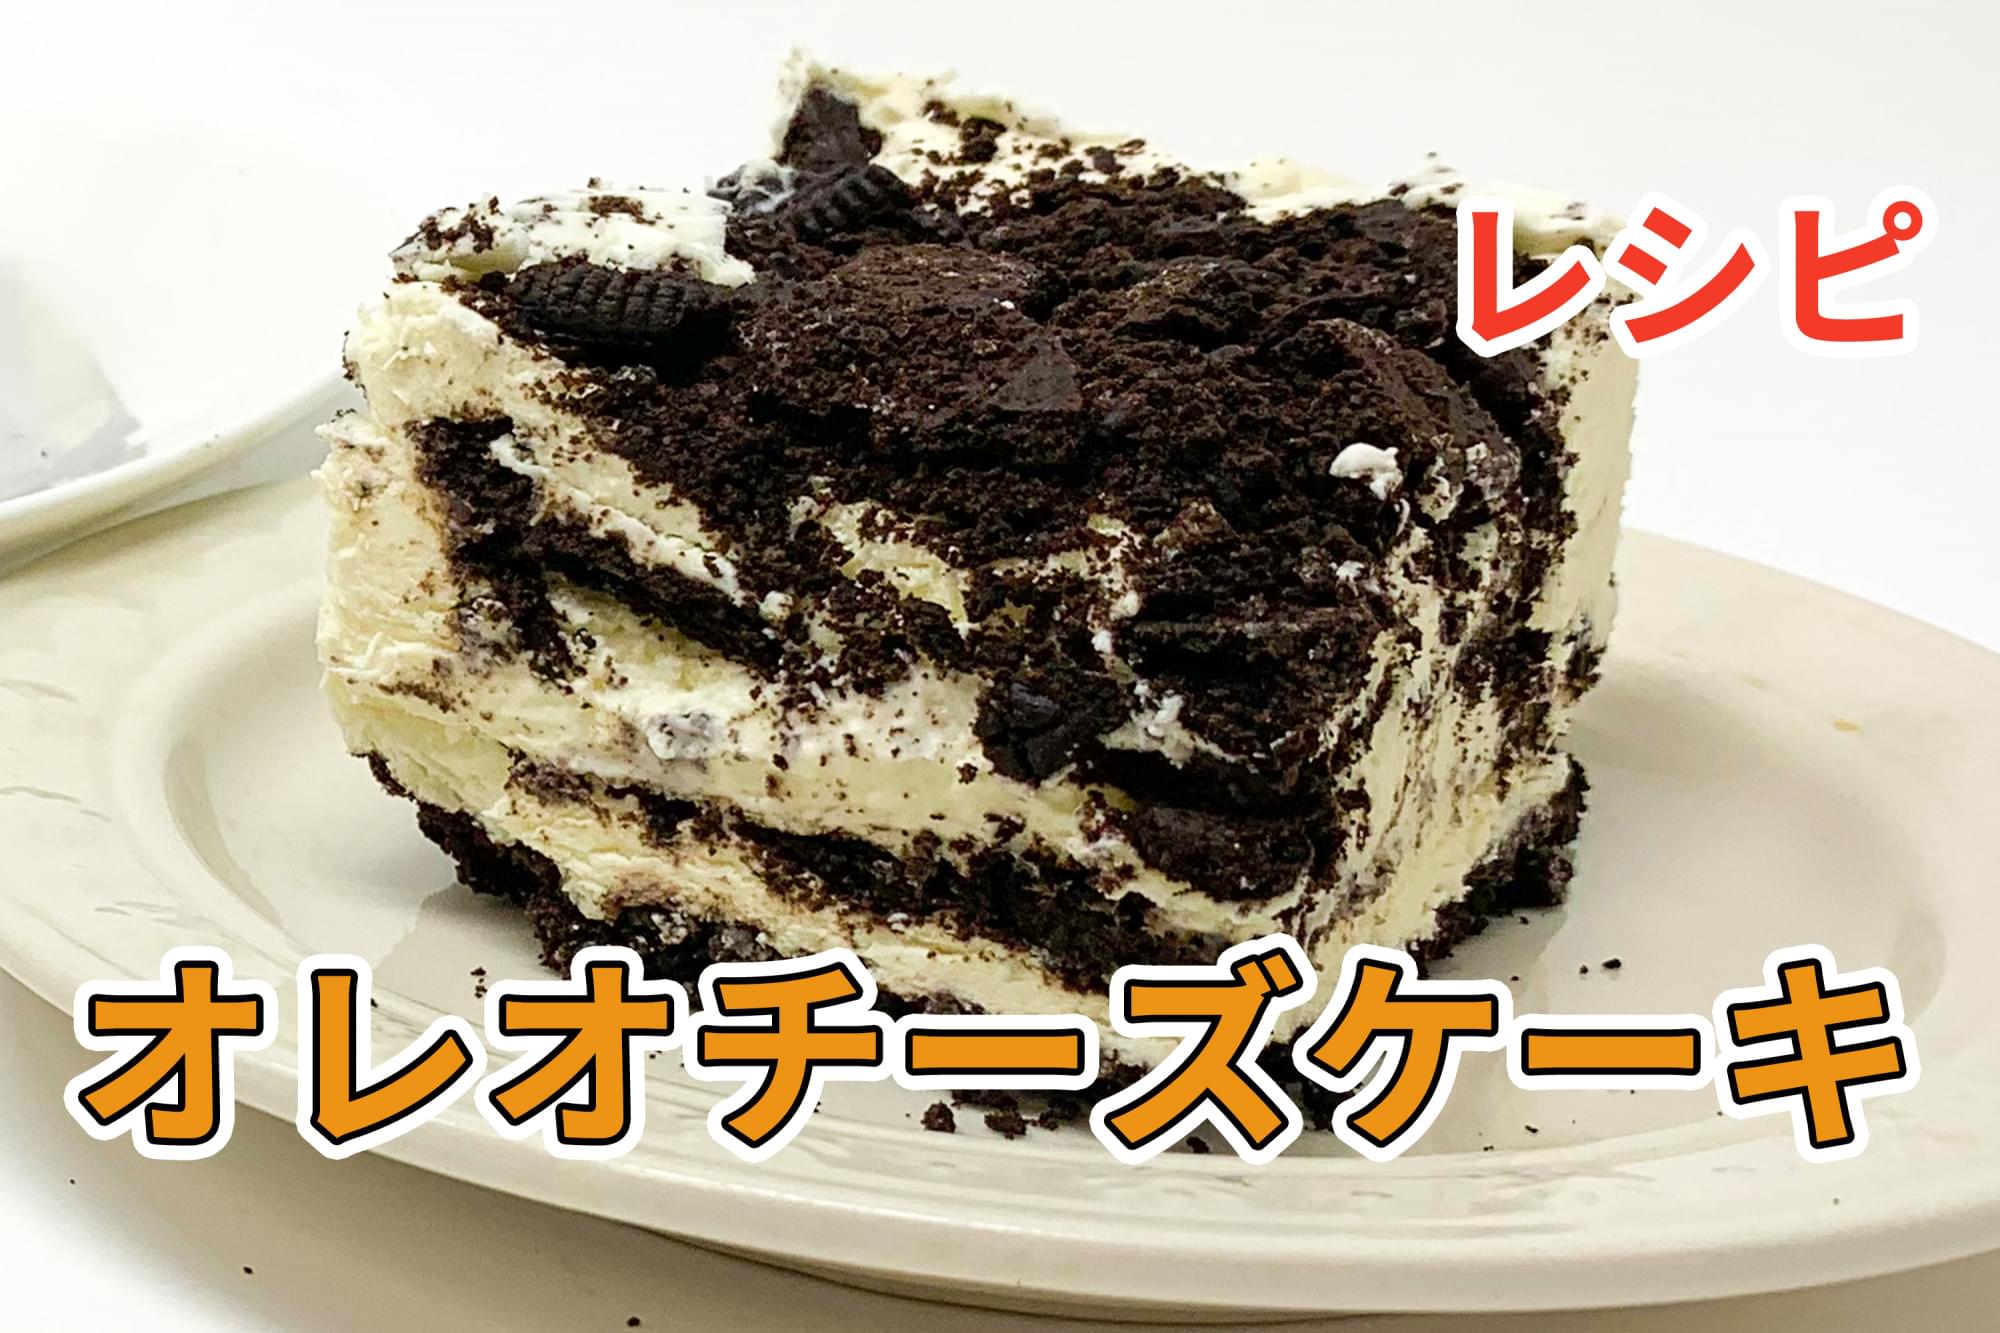 後方 上院 メーカー オレオ ケーキ 型 Adobe Gakuwari Jp